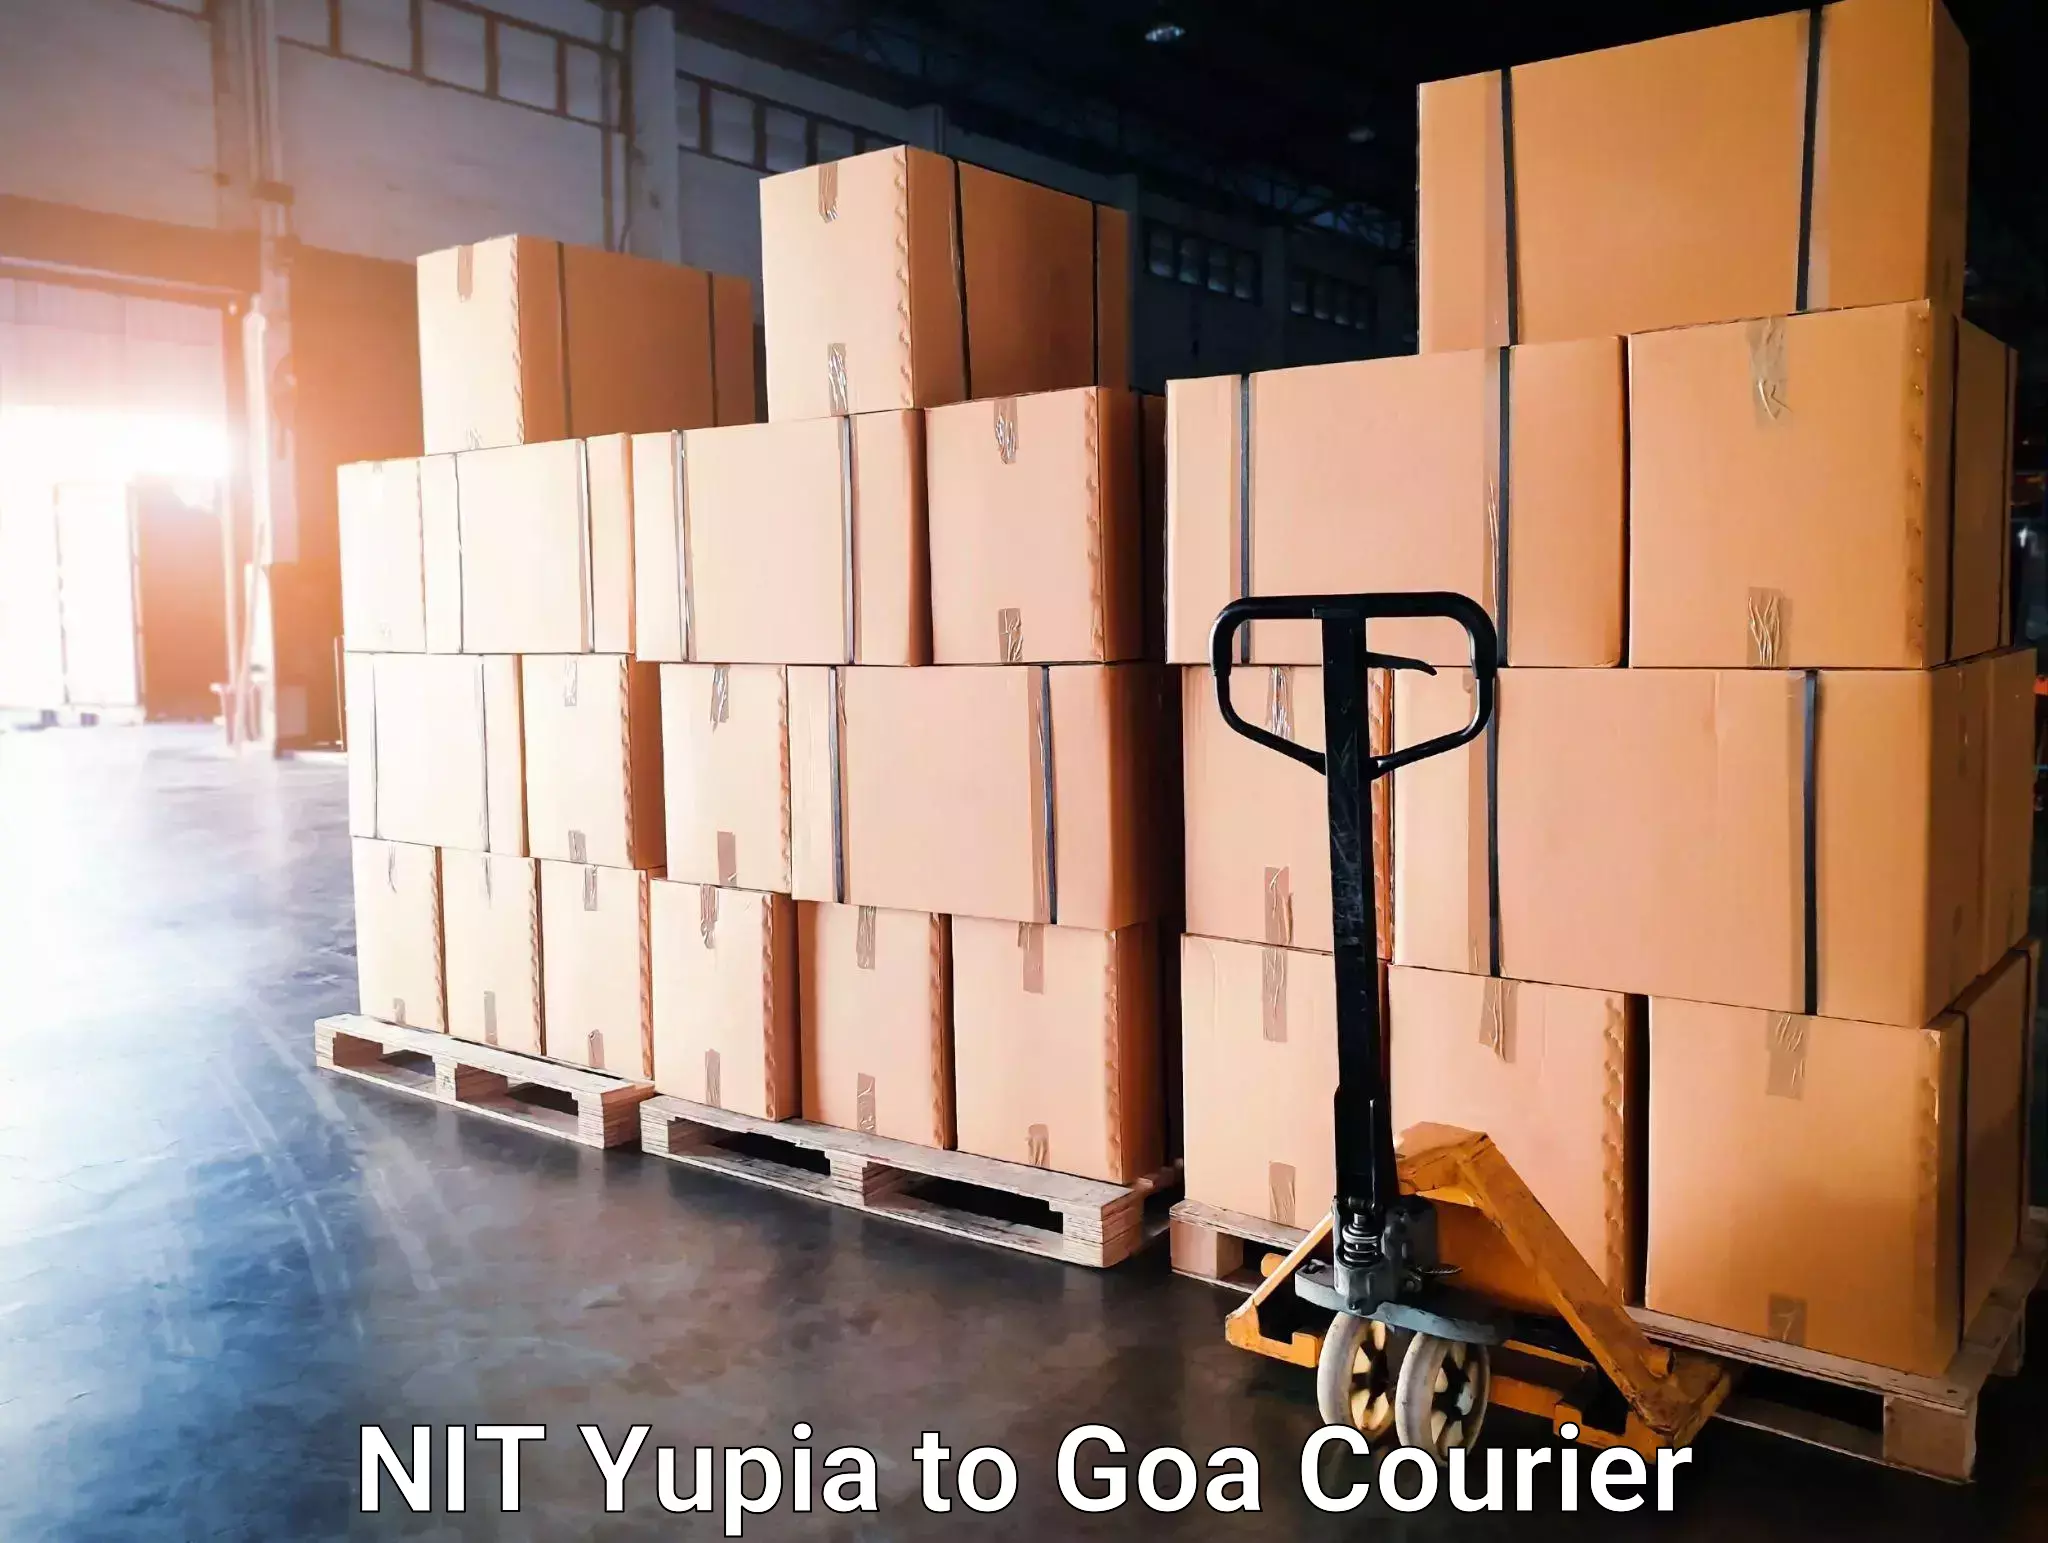 Urgent courier needs NIT Yupia to Vasco da Gama